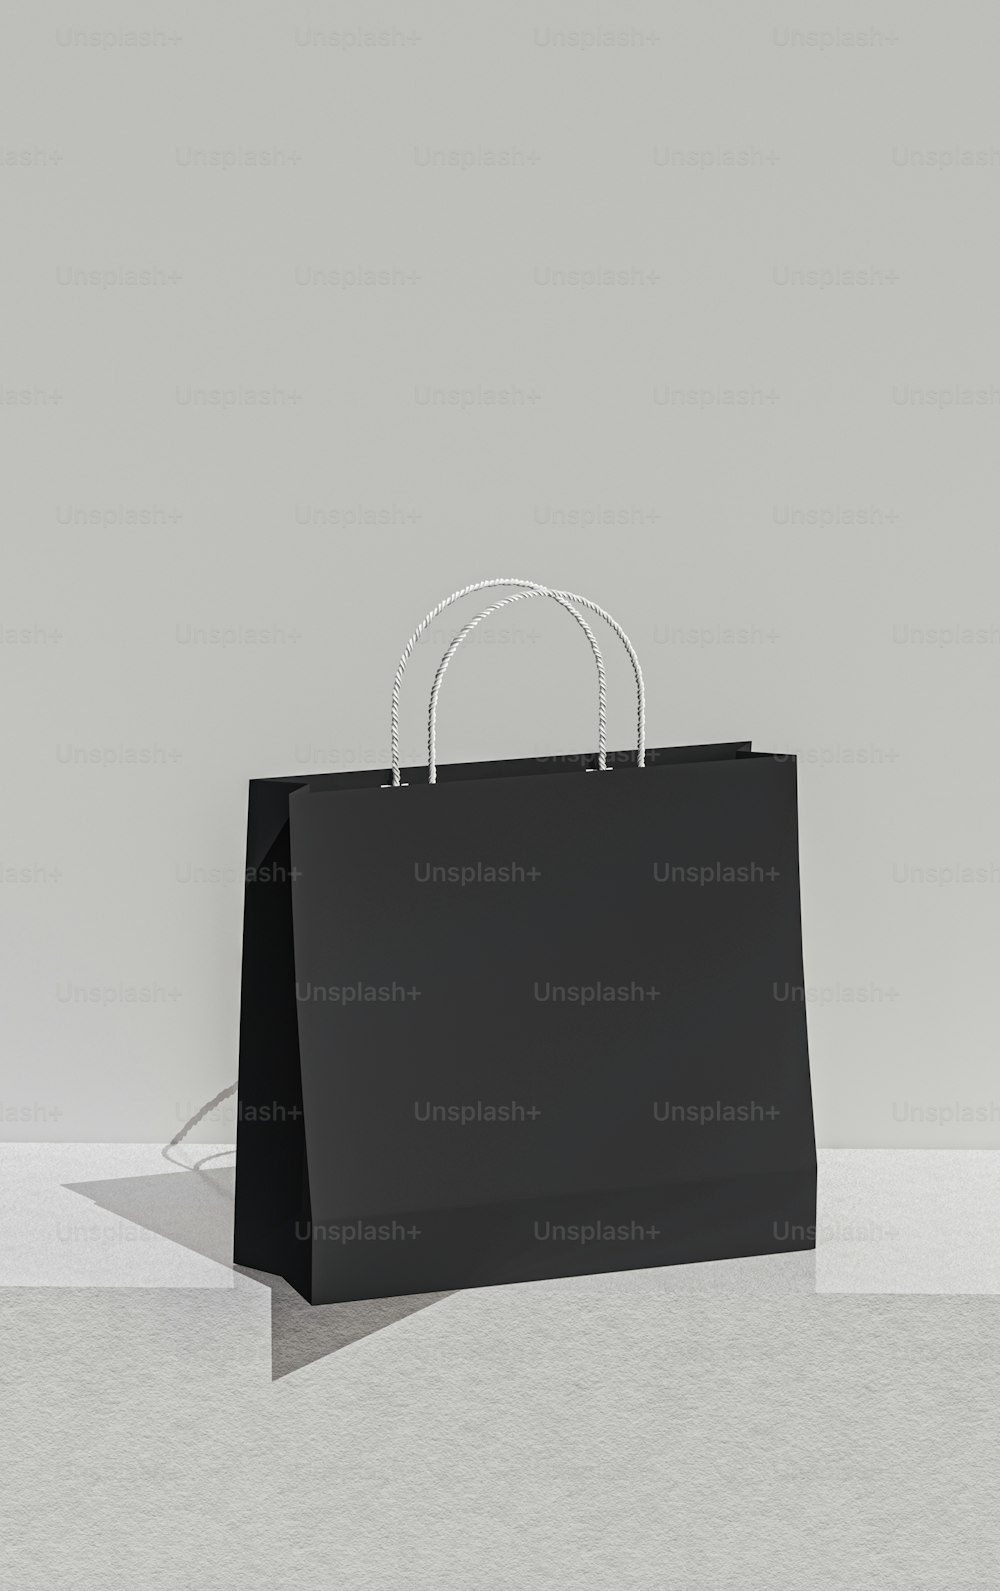 하얀 바닥 위에 앉아 있는 검은색 쇼핑백